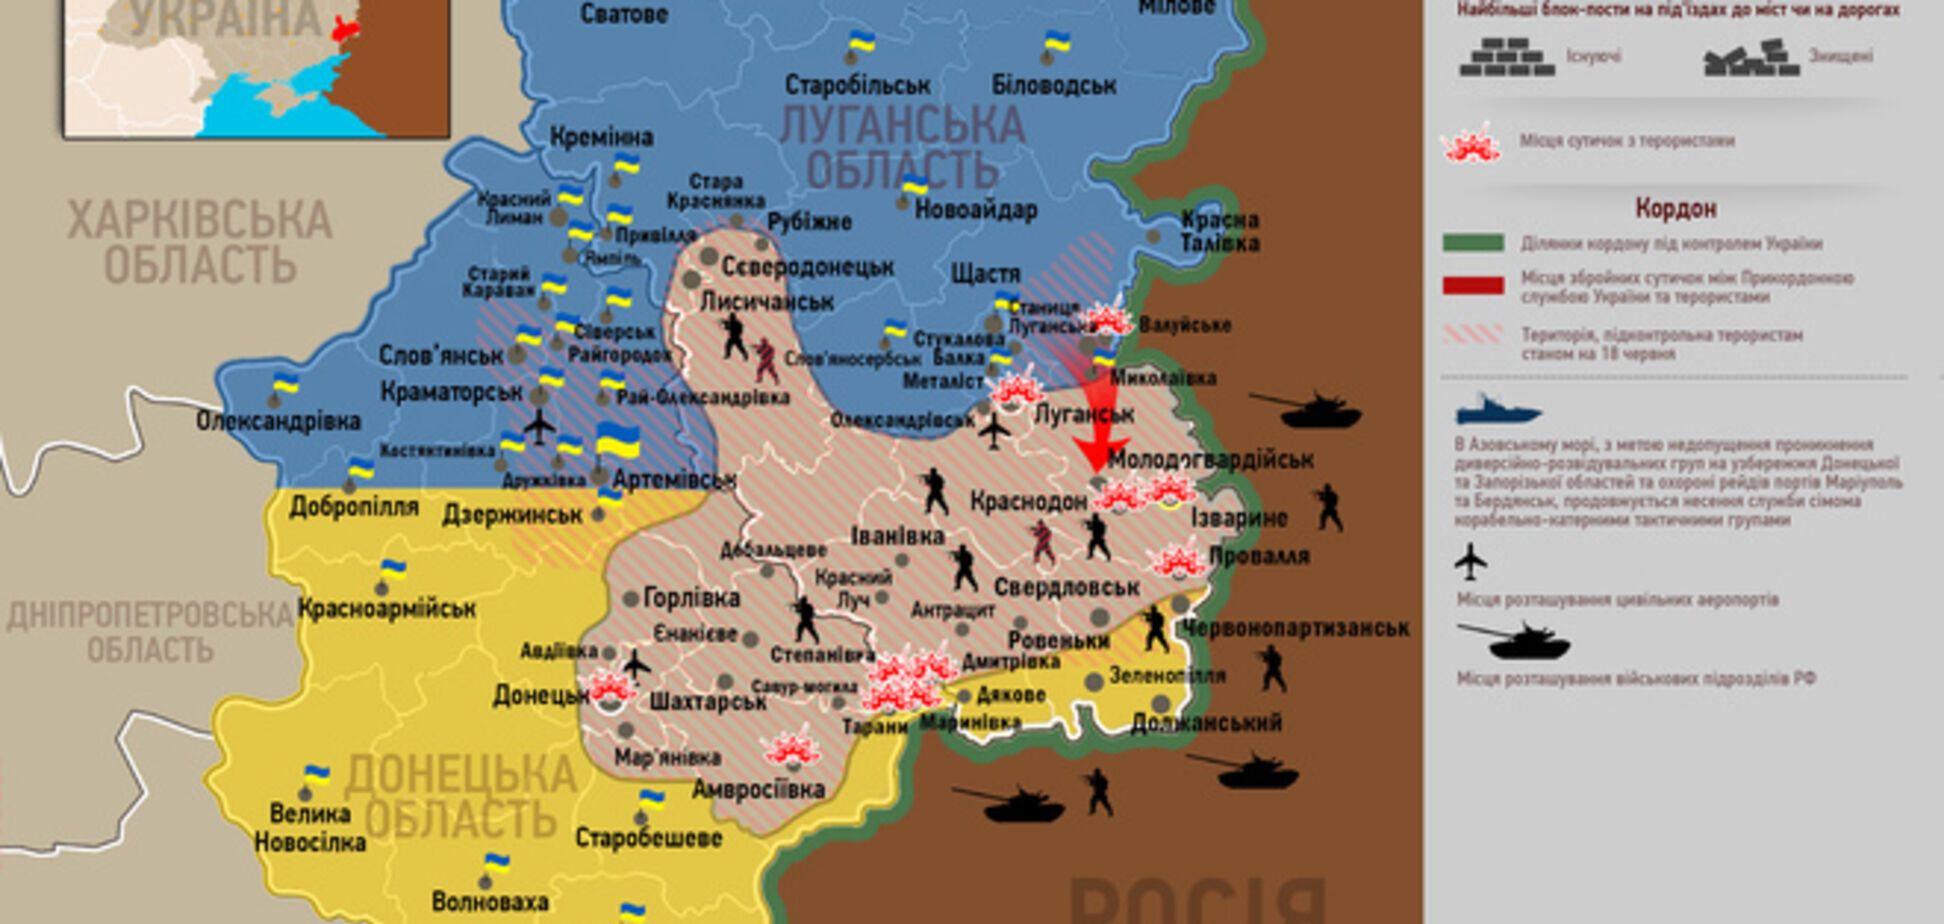 Опублікована актуальна карта боїв в зоні АТО - 16 липня 2014